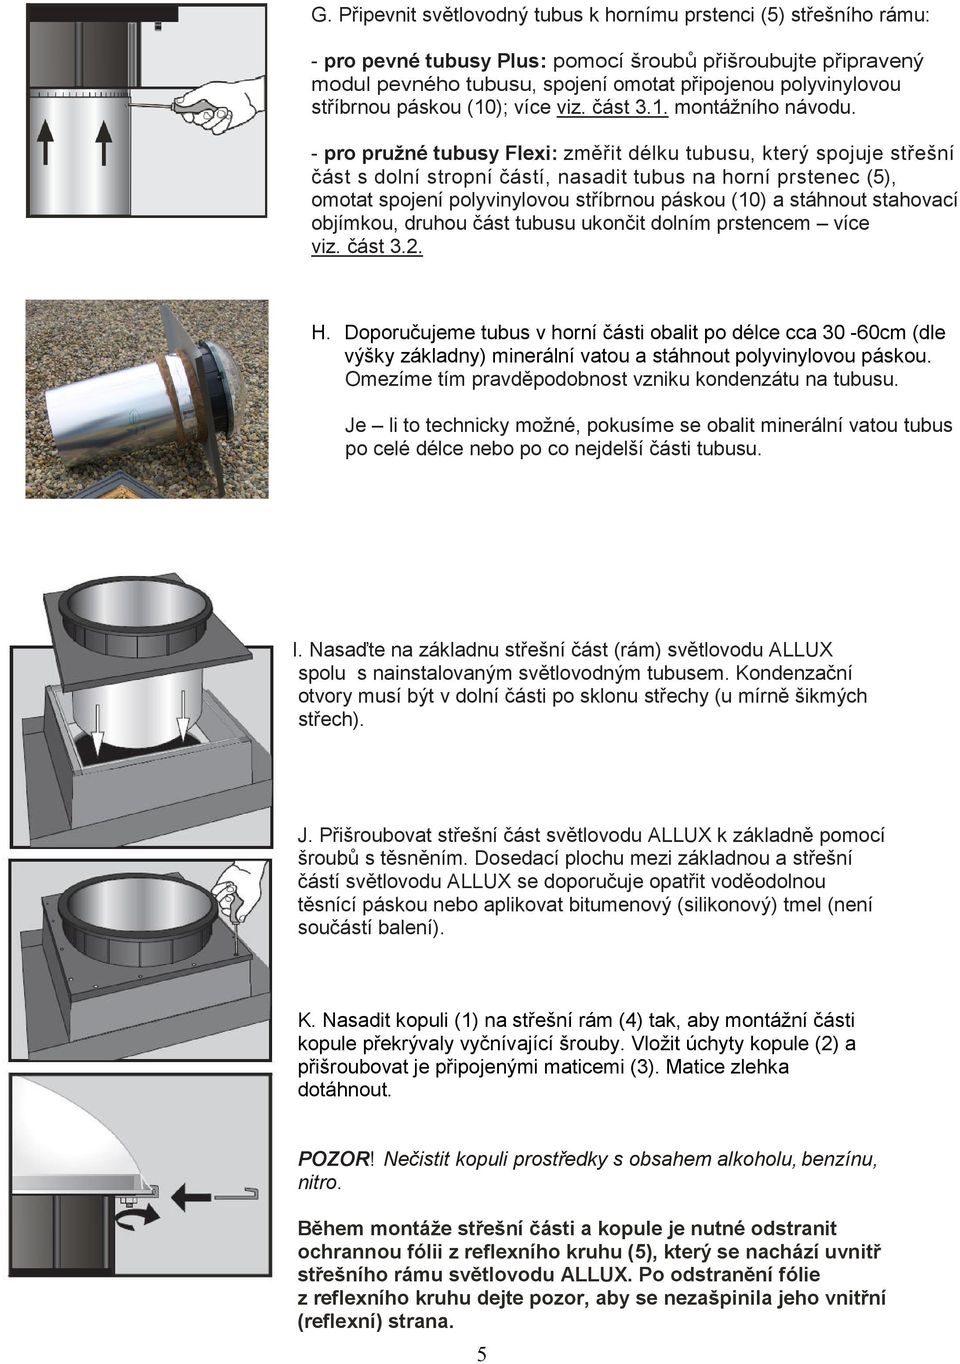 - pro pružné tubusy Flexi: změřit délku tubusu, který spojuje střešní část s dolní stropní částí, nasadit tubus na horní prstenec (5), omotat spojení polyvinylovou stříbrnou páskou (10) a stáhnout